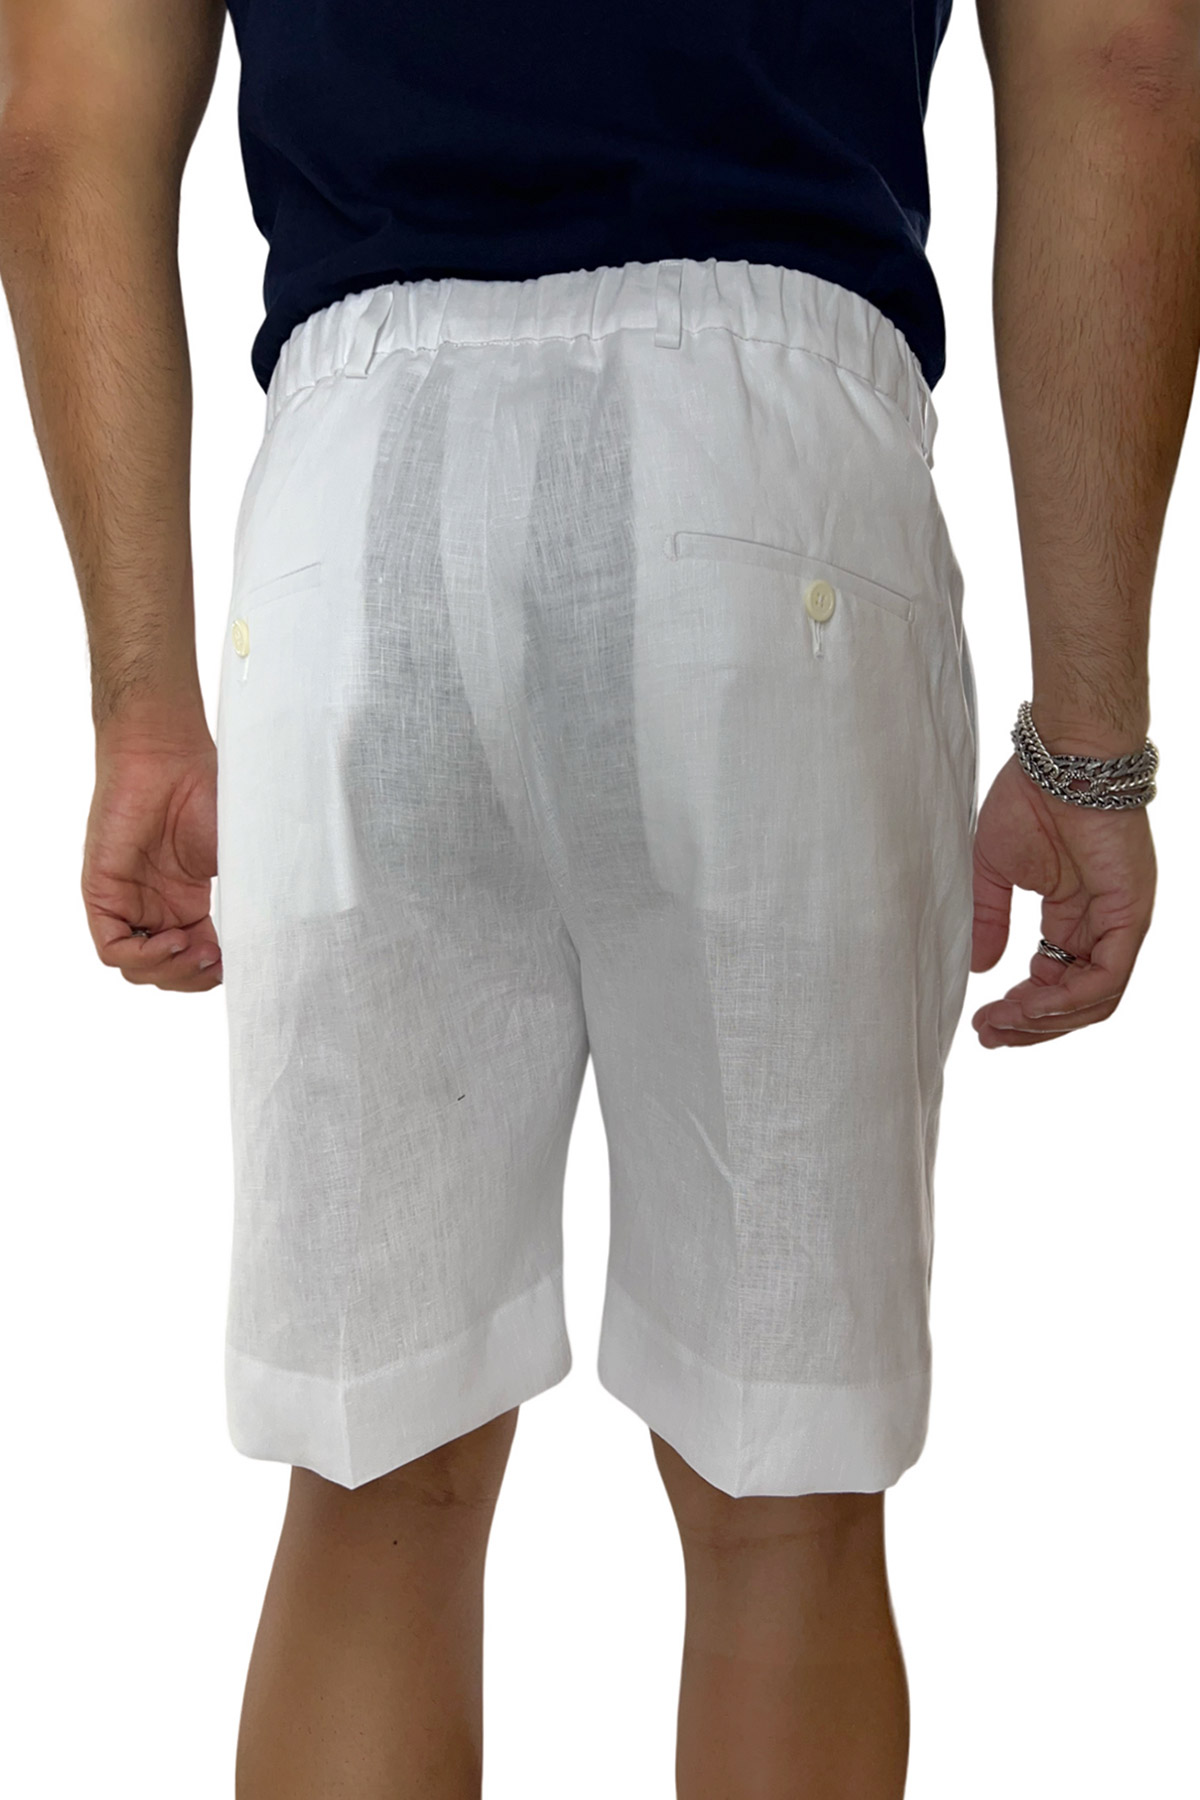 Bermuda uomo bianco in lino 100% con mezza coulisse doppia pinces e tasca america